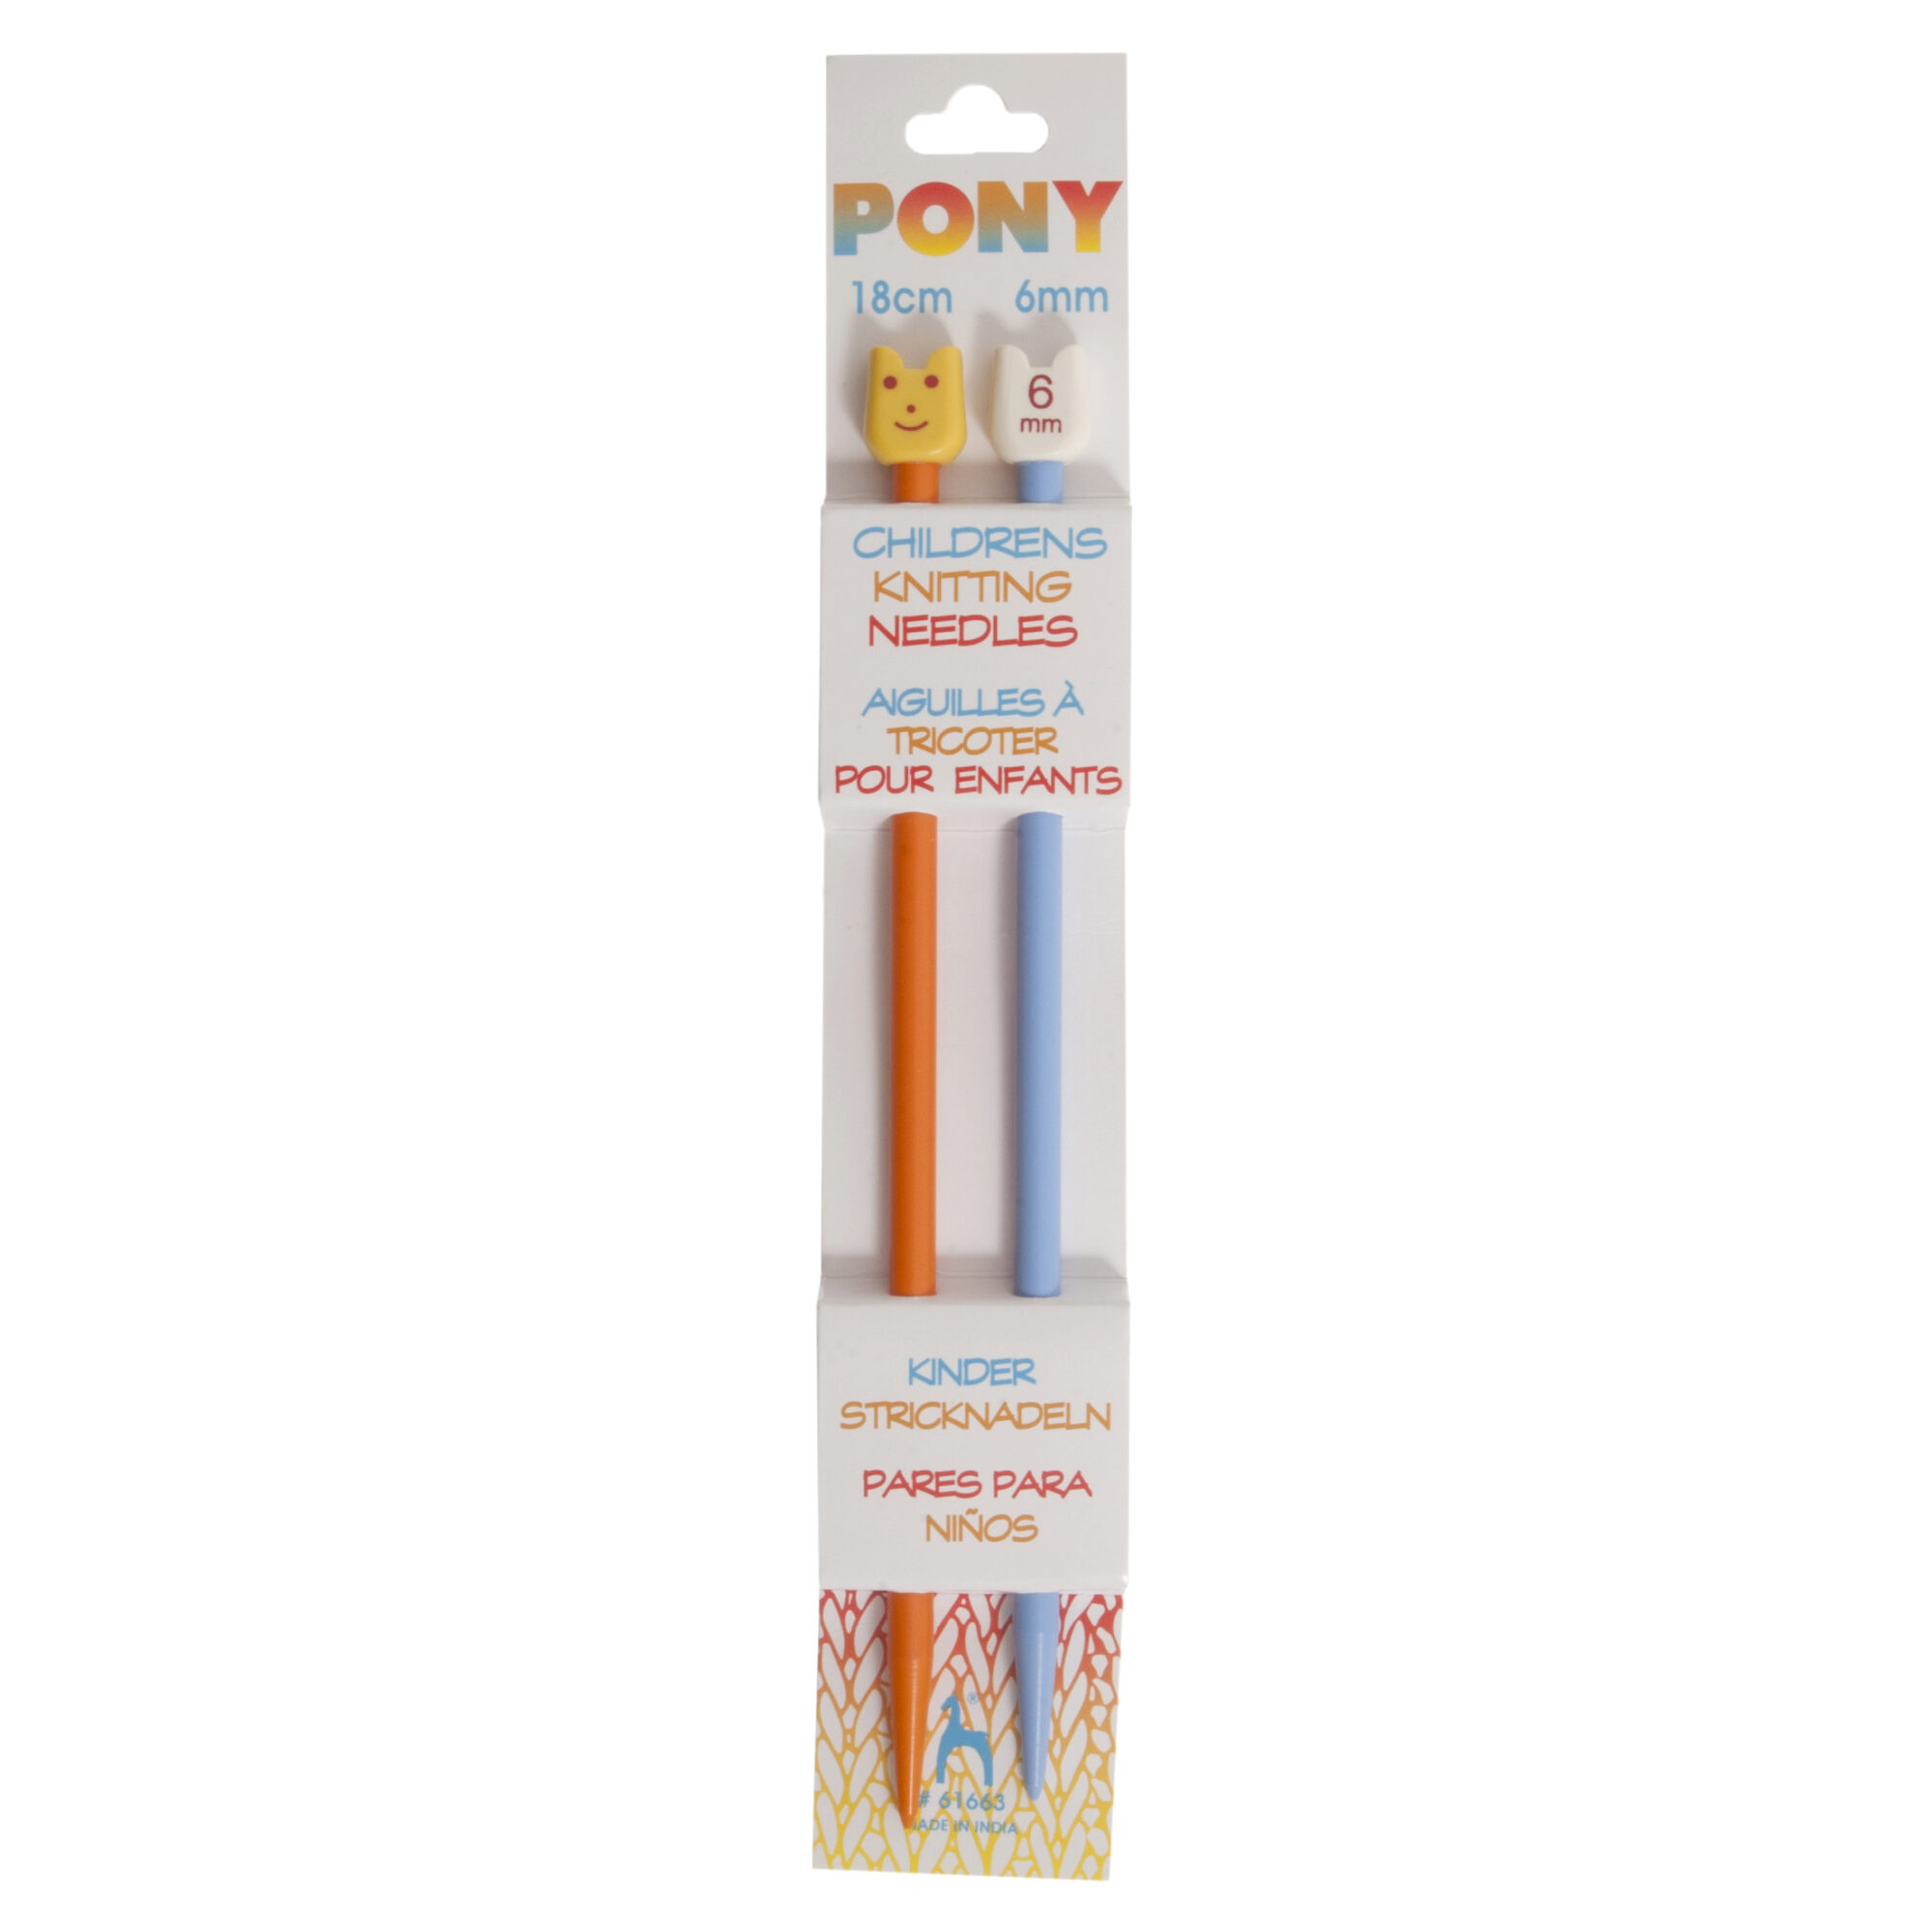 pony-childrens-knitting-needles-18cm-long